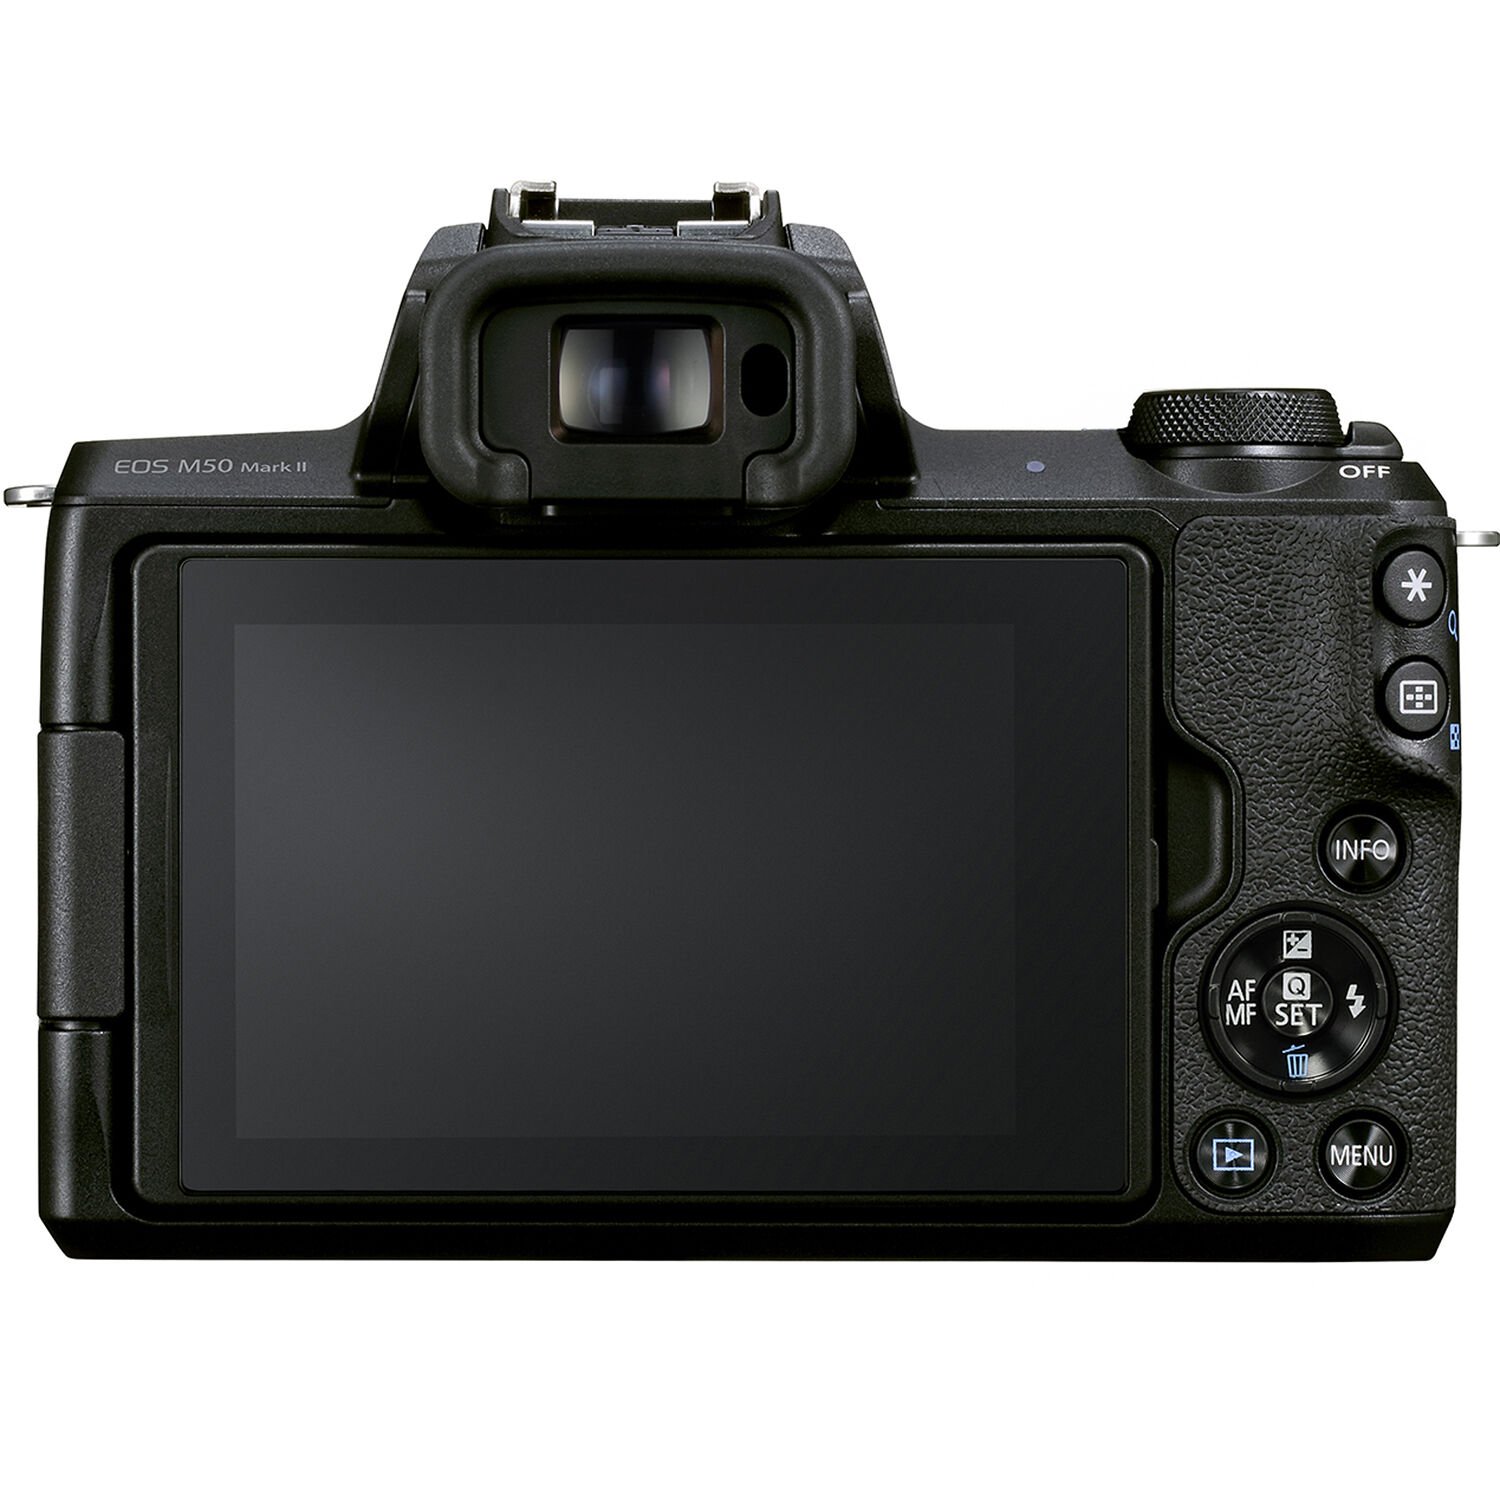 Dual Pixel CMOS AF trên Canon EOS M50 II cung cấp hiệu suất lấy nét nhanh và mượt mà